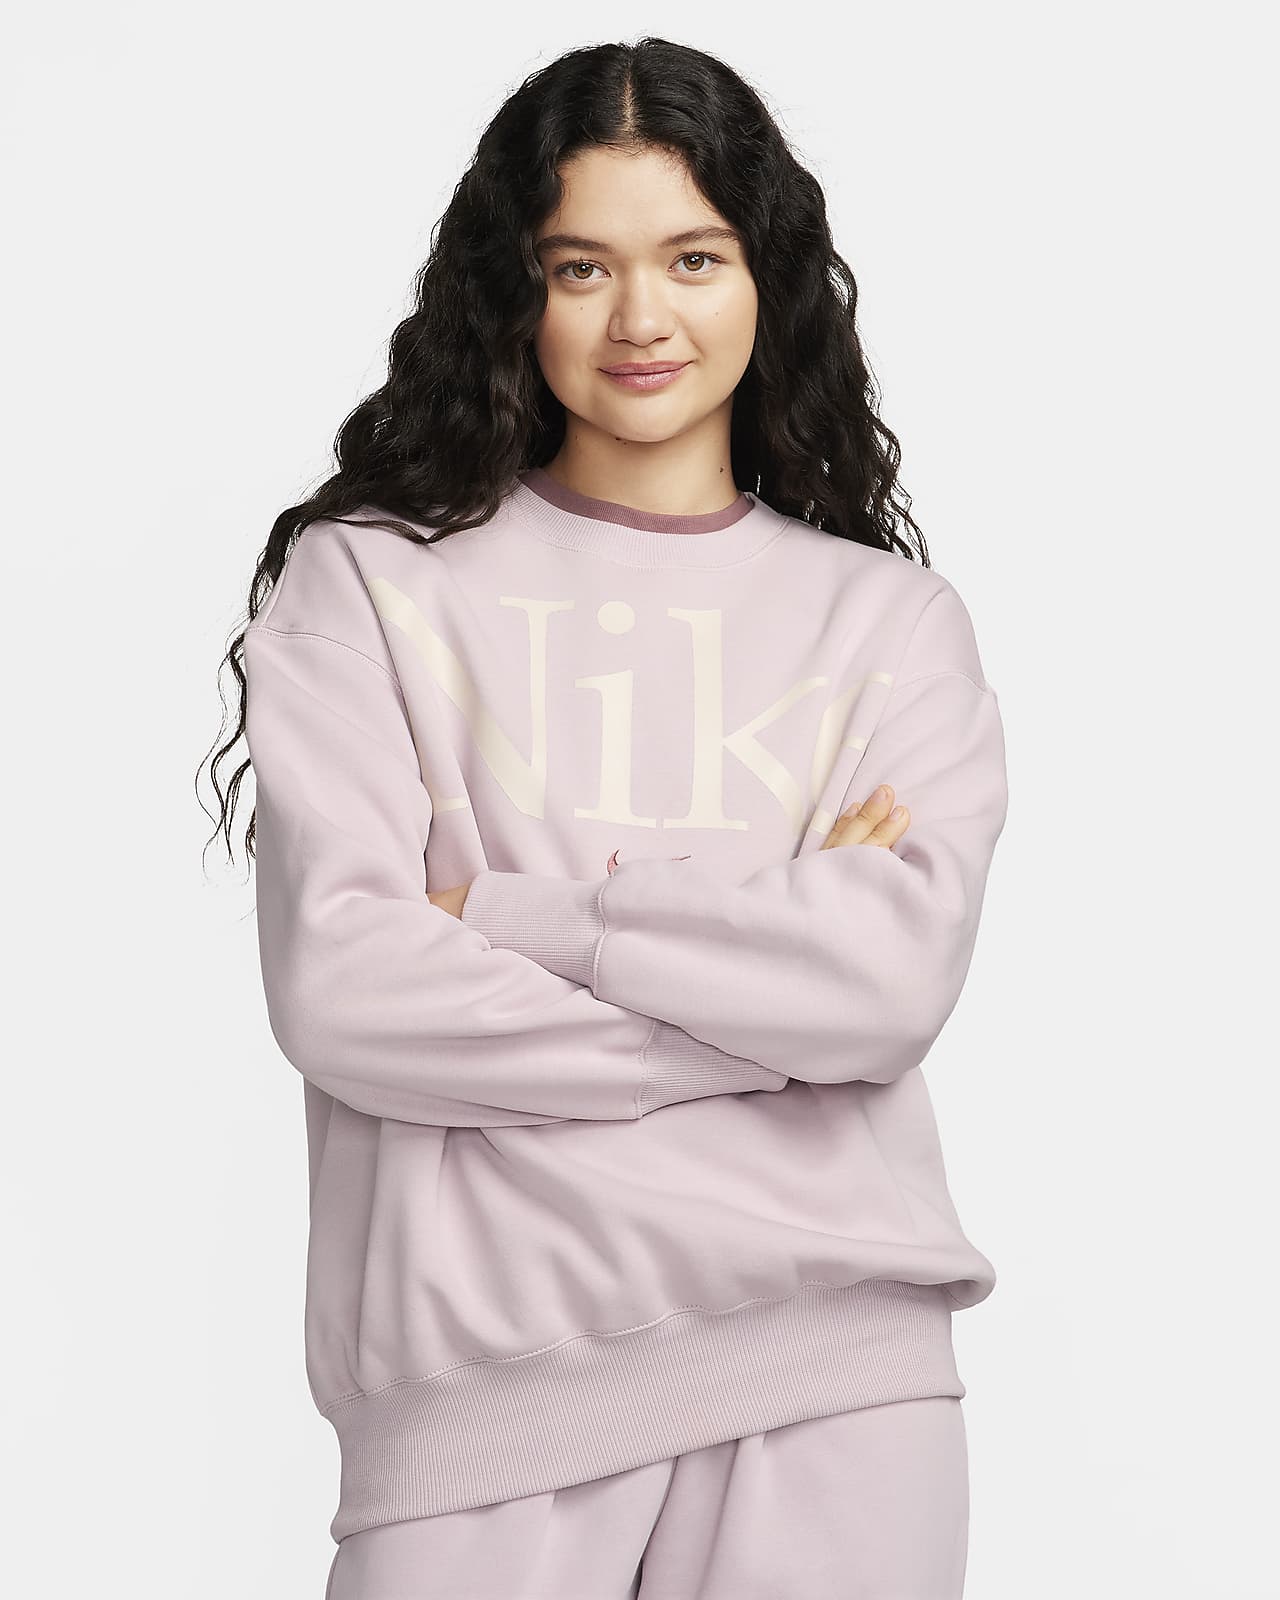 Buy Nike Pink Sportswear Phoenix Sweatshirt in Fleece for Women